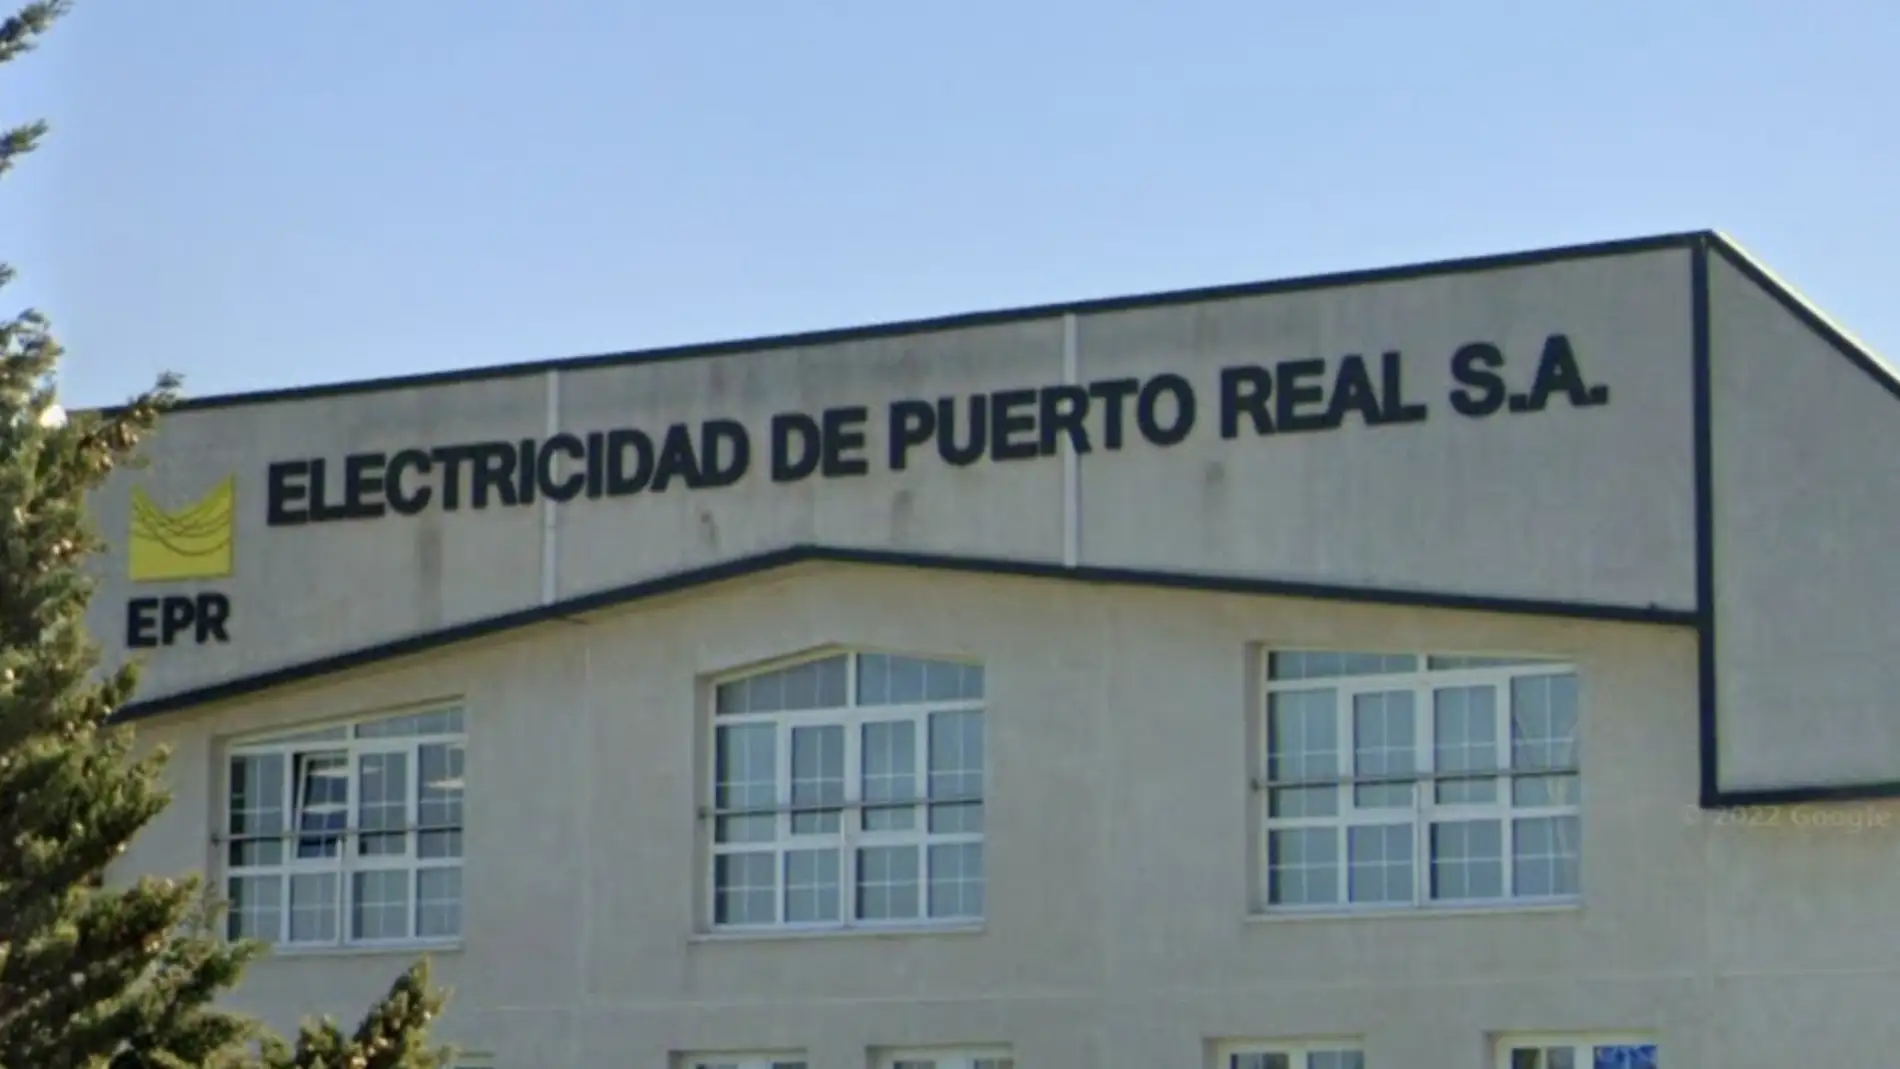 Sede de Electricidad de Puerto Real S.A.